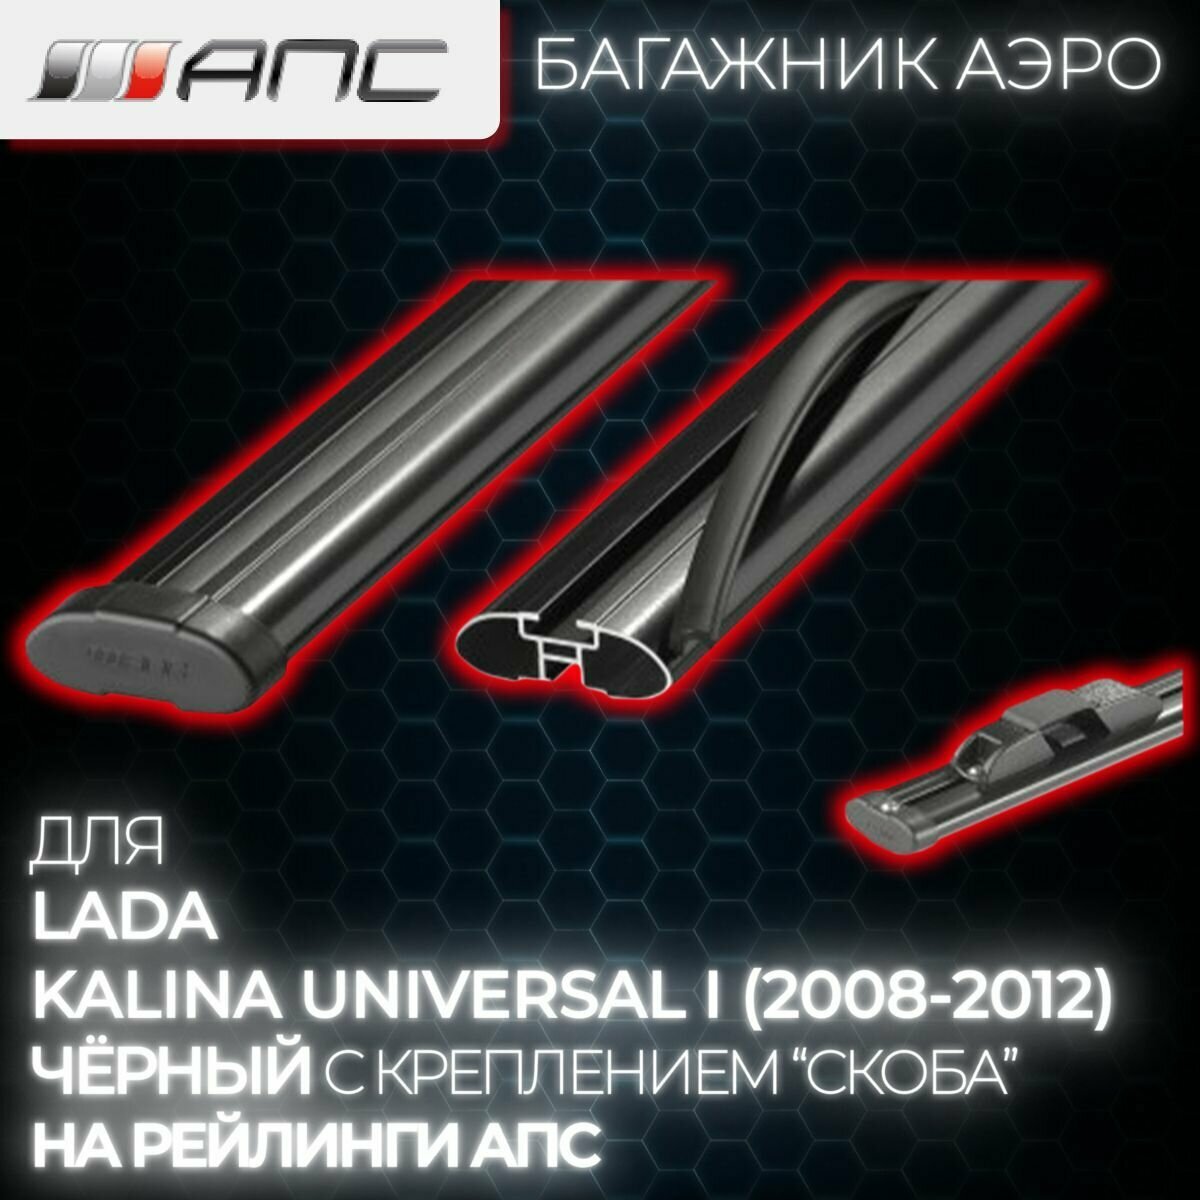 Багажник для Lada Kalina Universal I (2008-2012) (Лада Калина Универсал) аэро на рейлинги АПС, 130 см, черный (комплект)